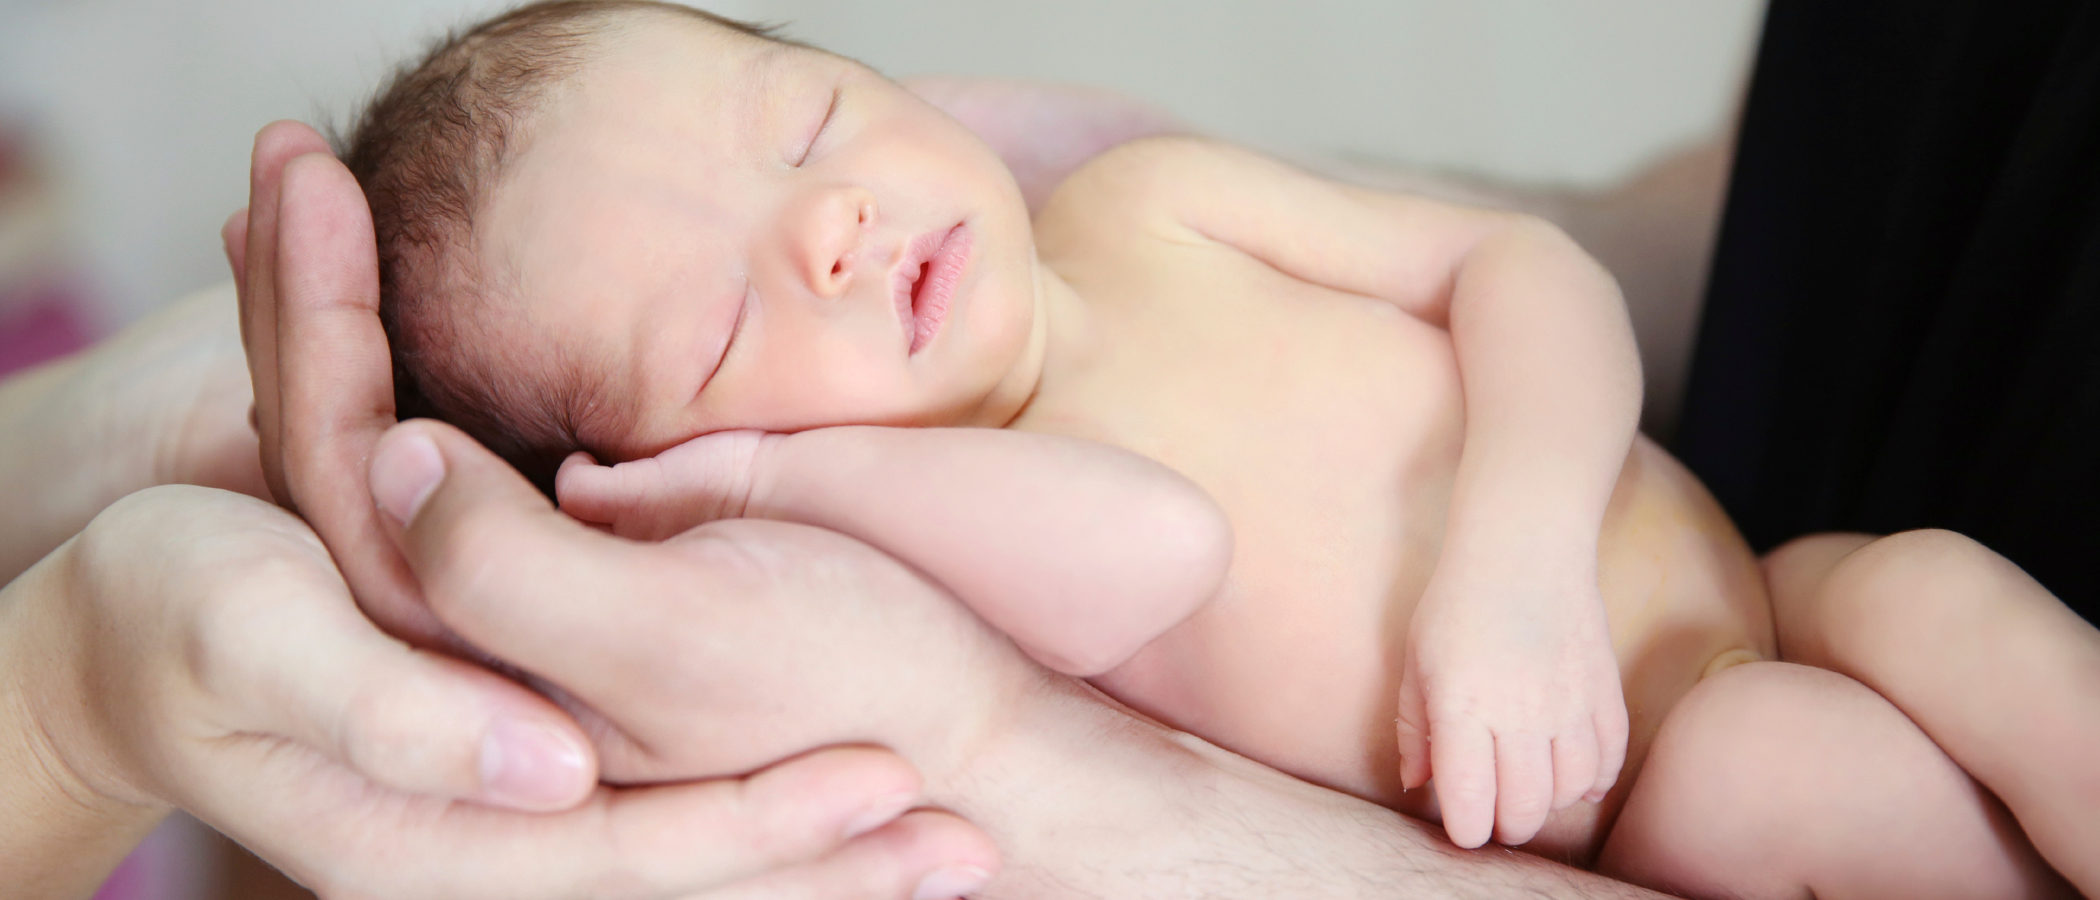 El contacto piel con piel del recién nacido y el padre es posible